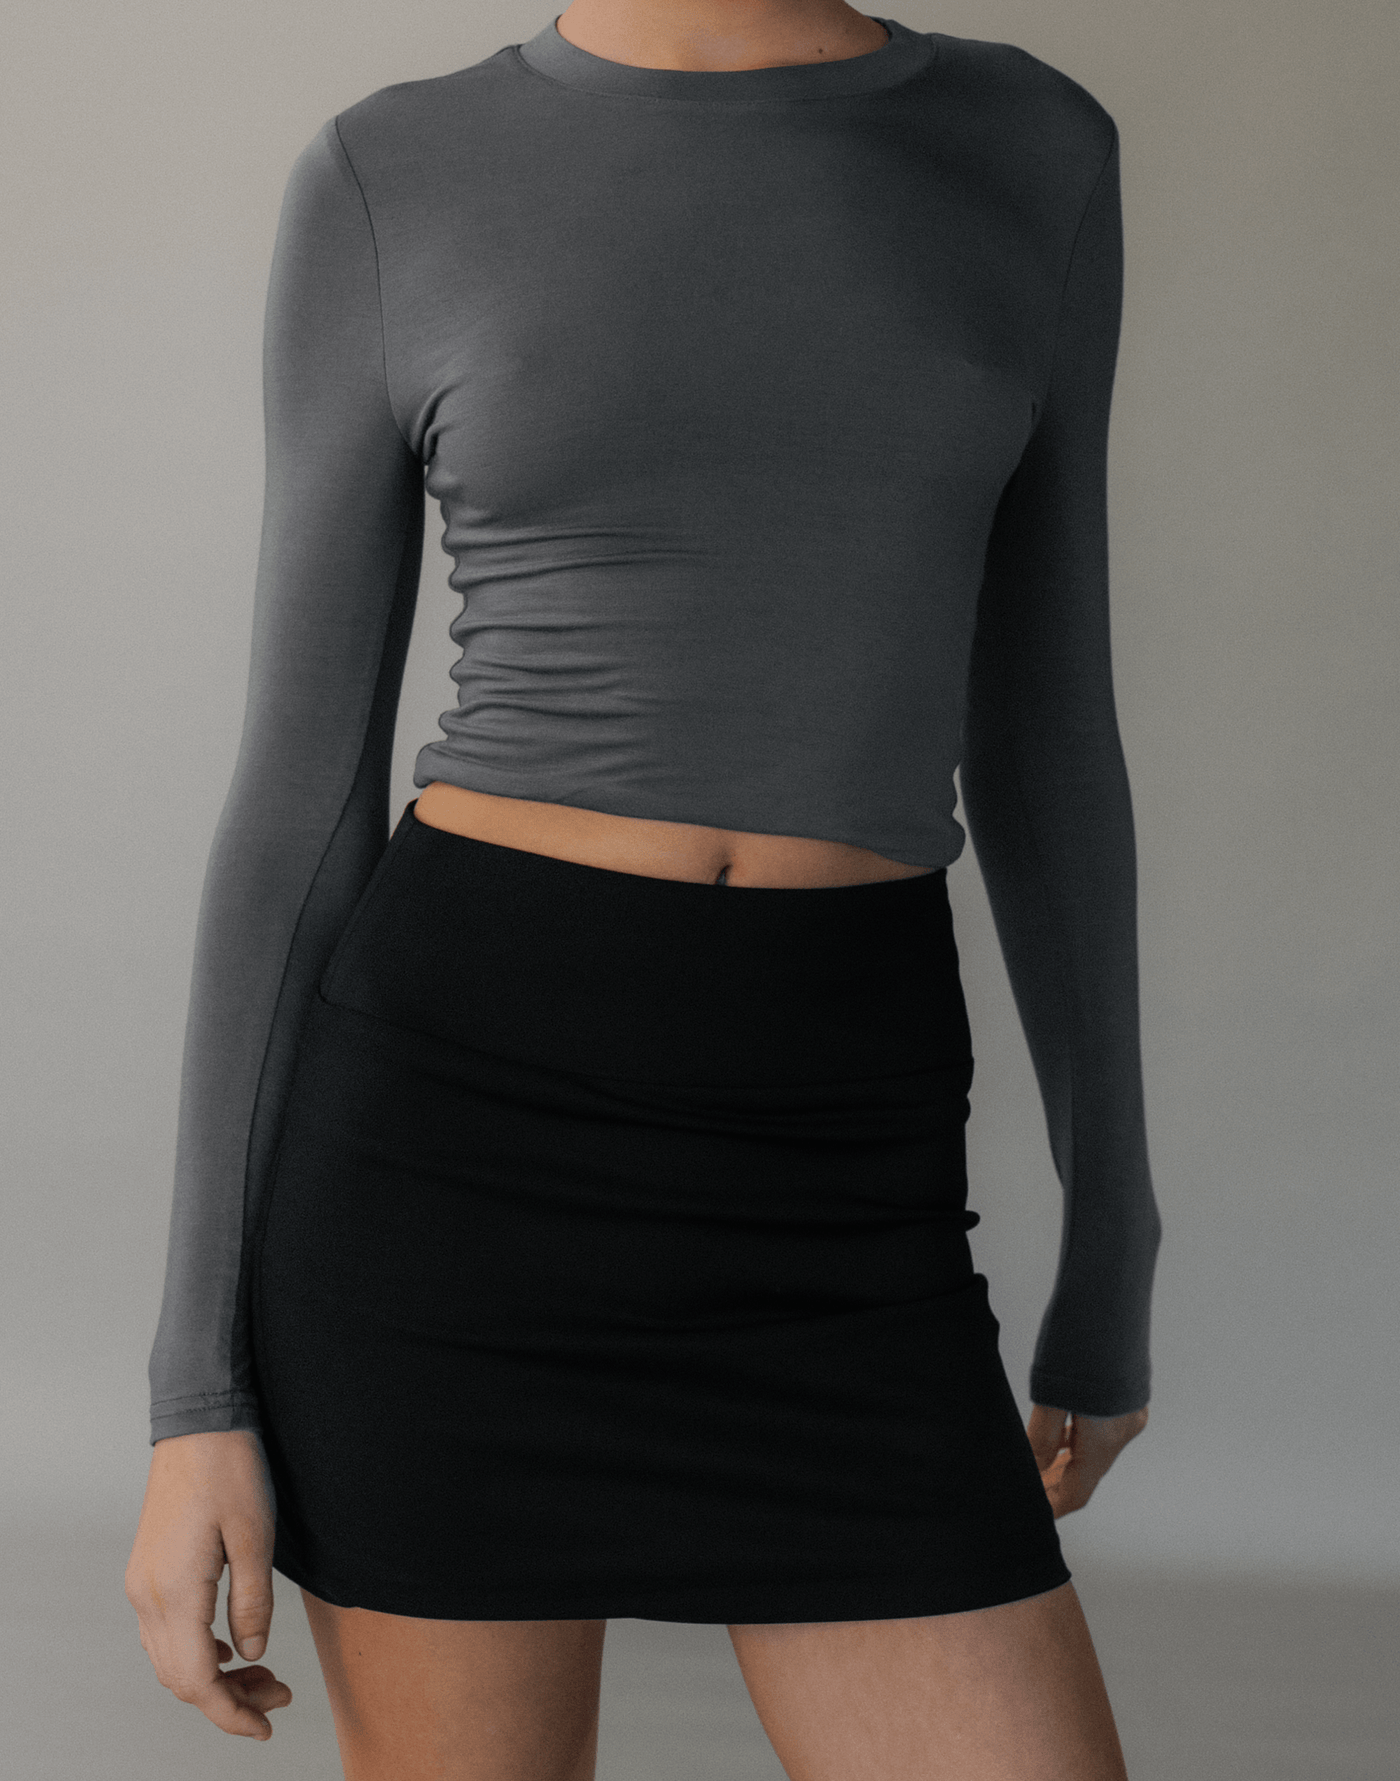 Alissa Mini Skirt (Black) - Fitted Mid Rise Mini Skirt - Women's Skirt - Charcoal Clothing